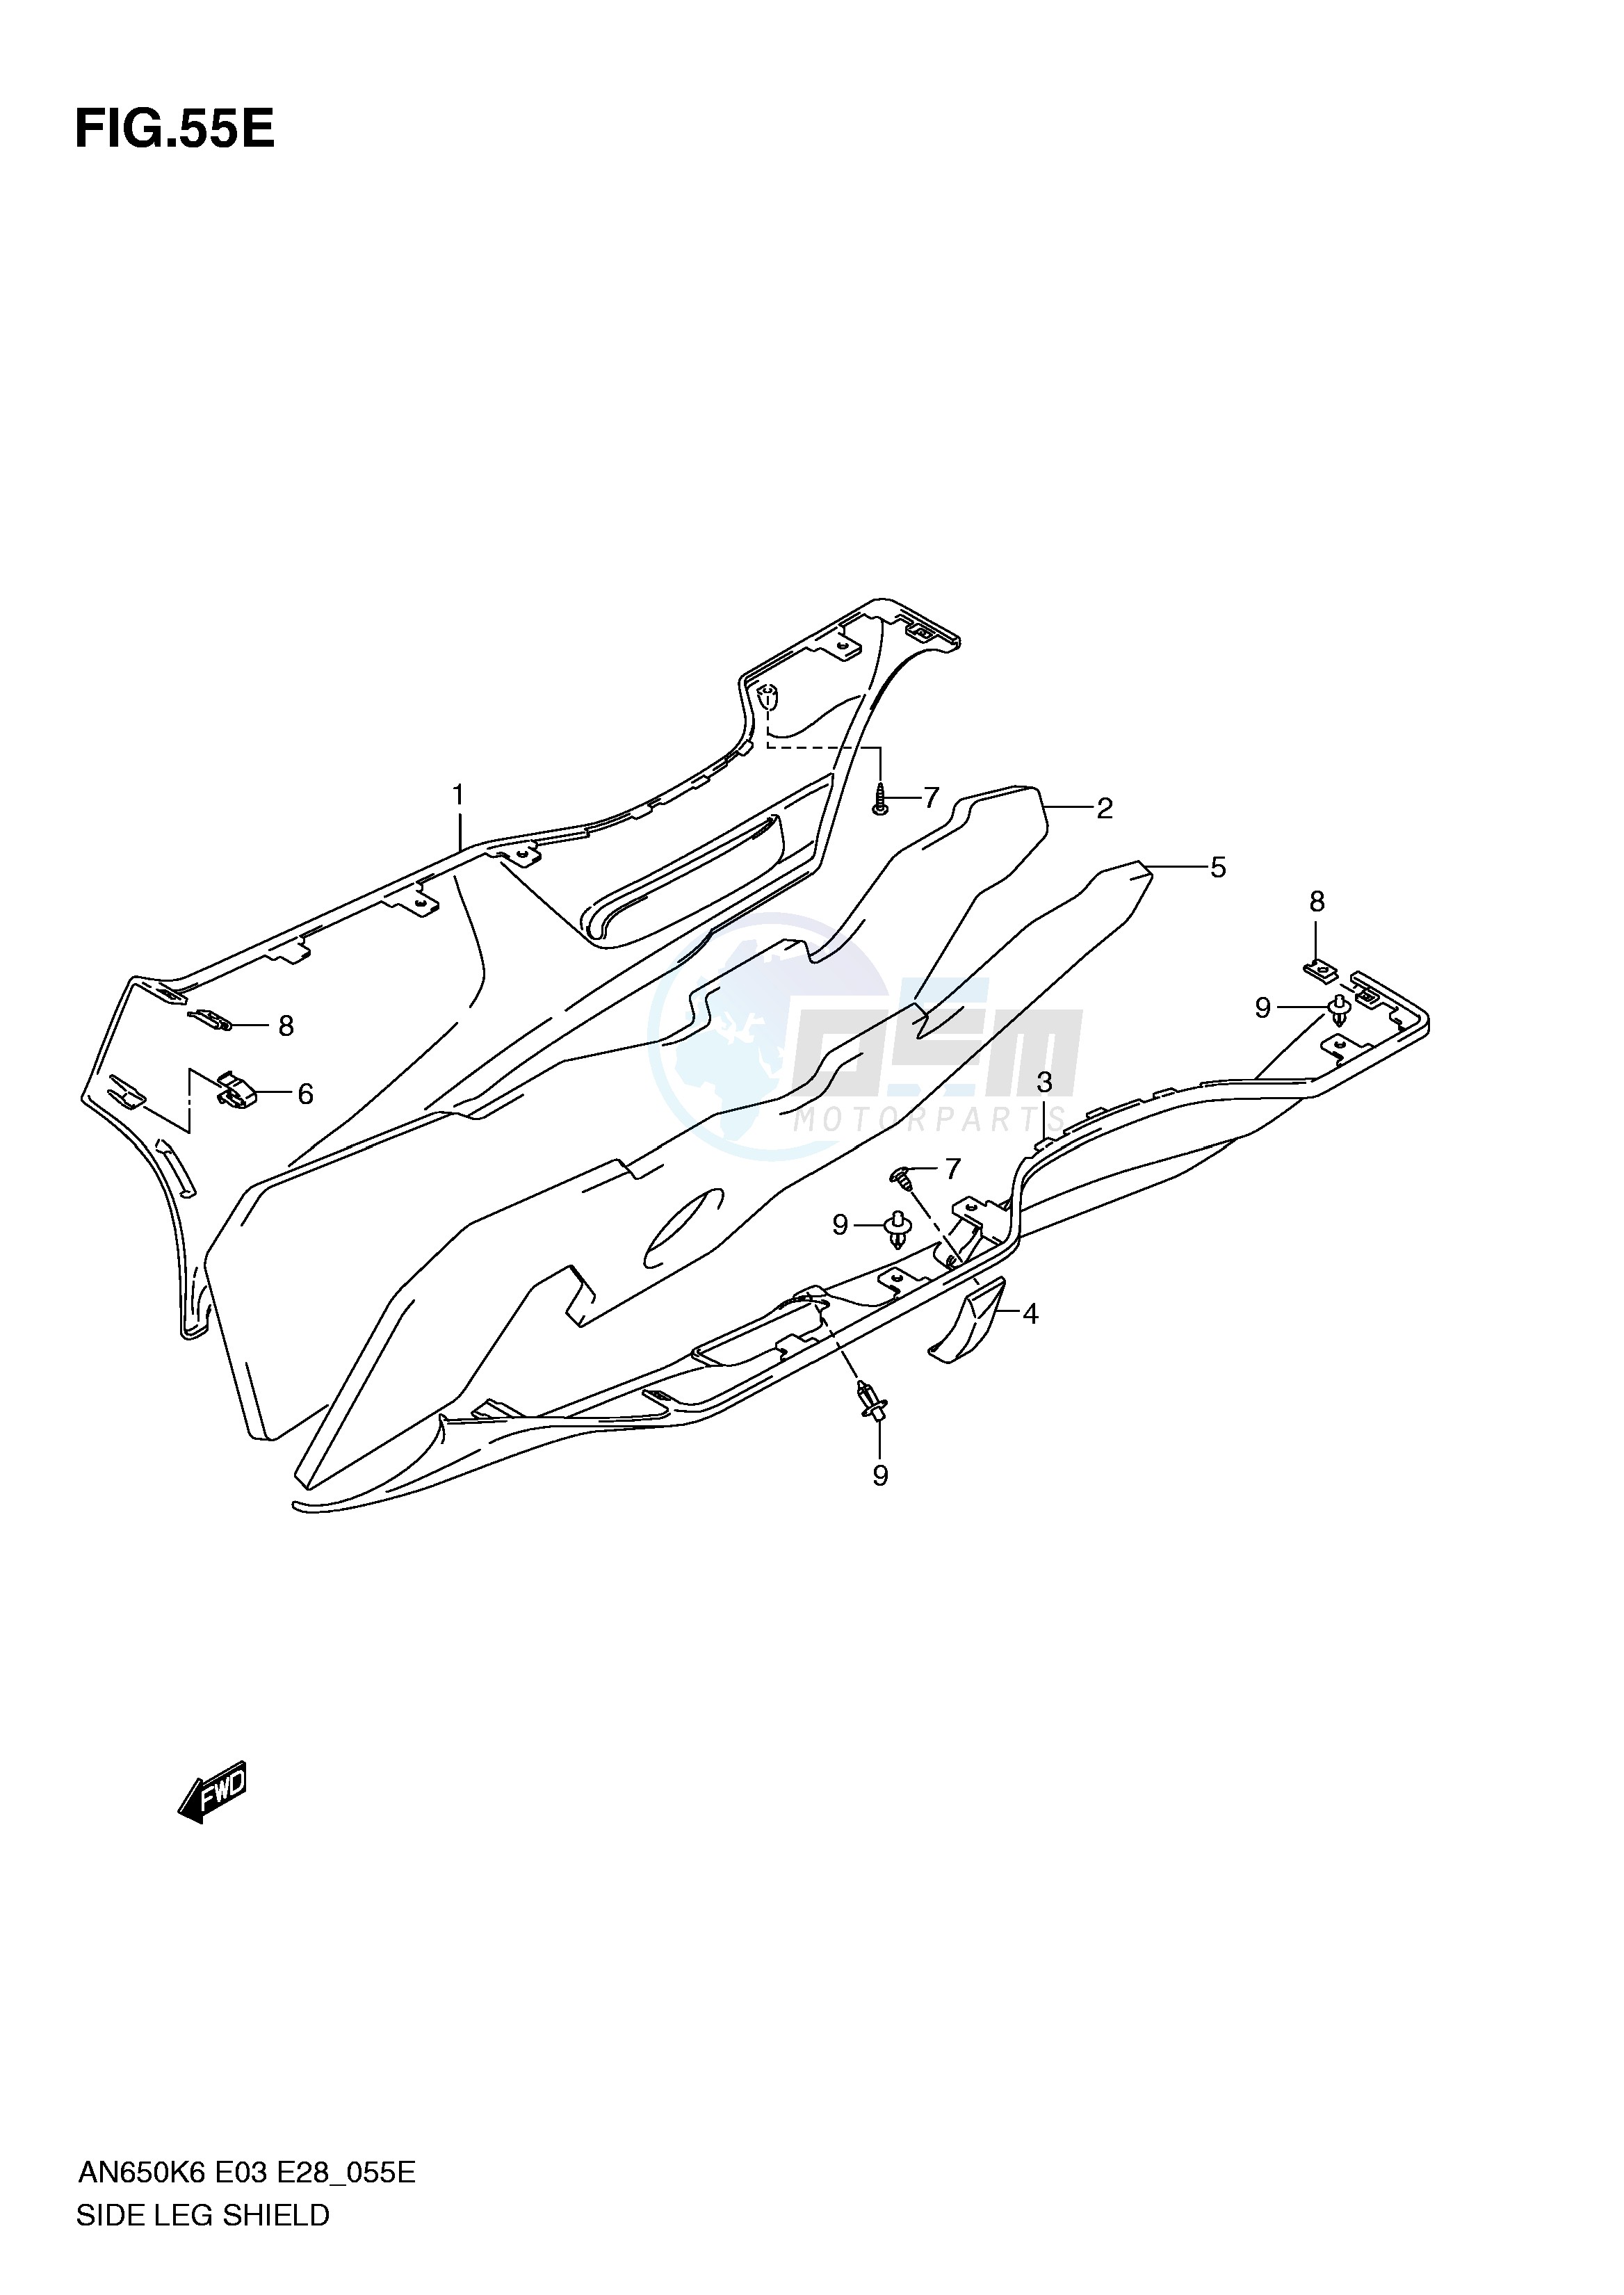 SIDE LEG SHIELD (MODEL AN650AL0) blueprint